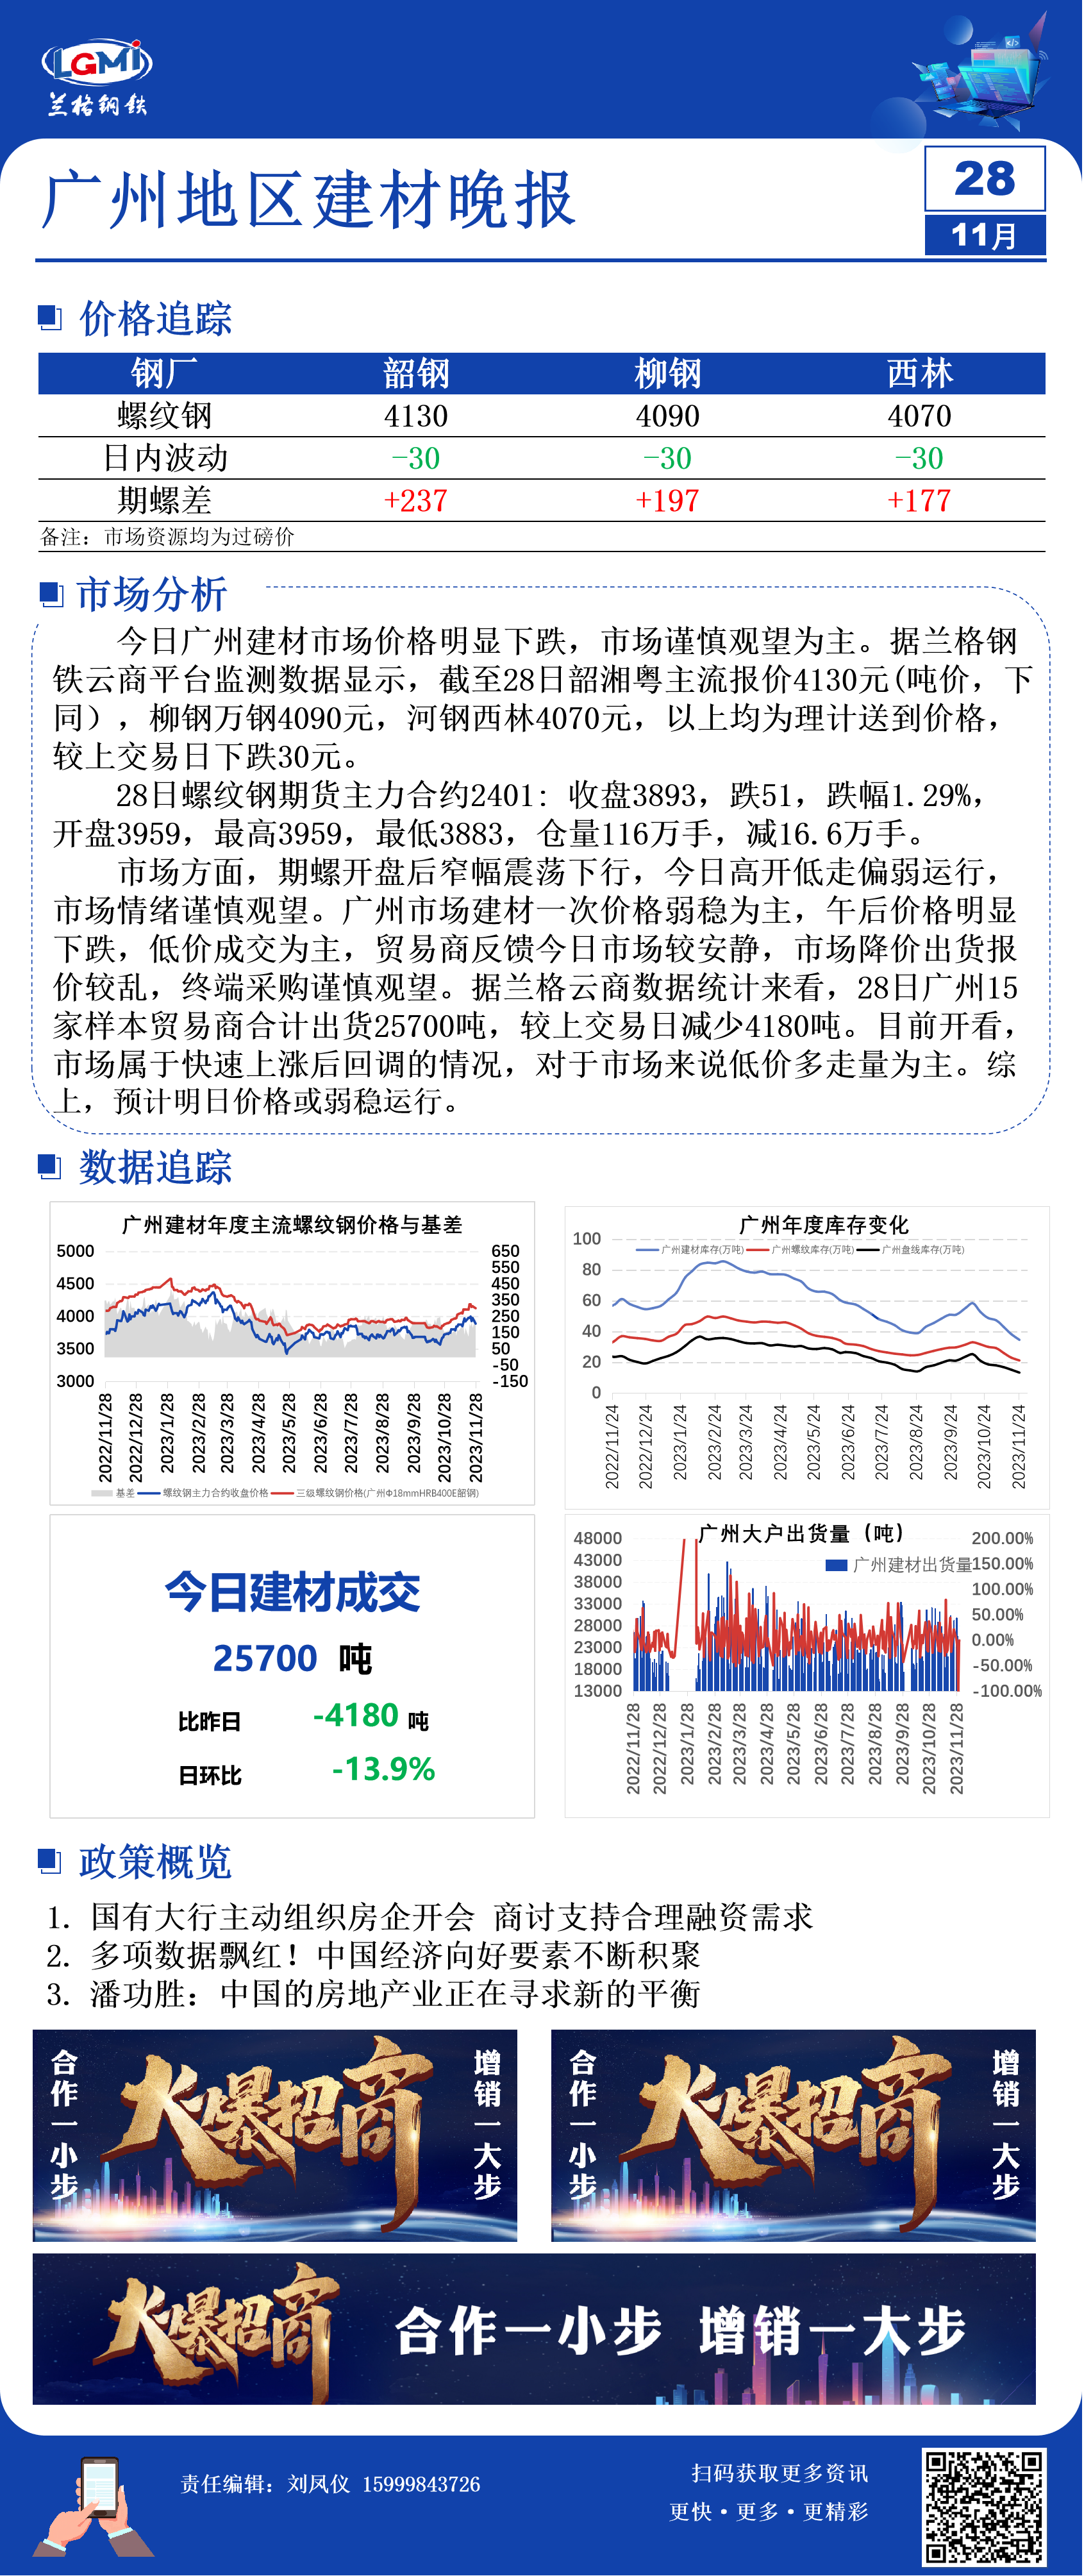 广州建材价格明显下跌 市场成交稍逊